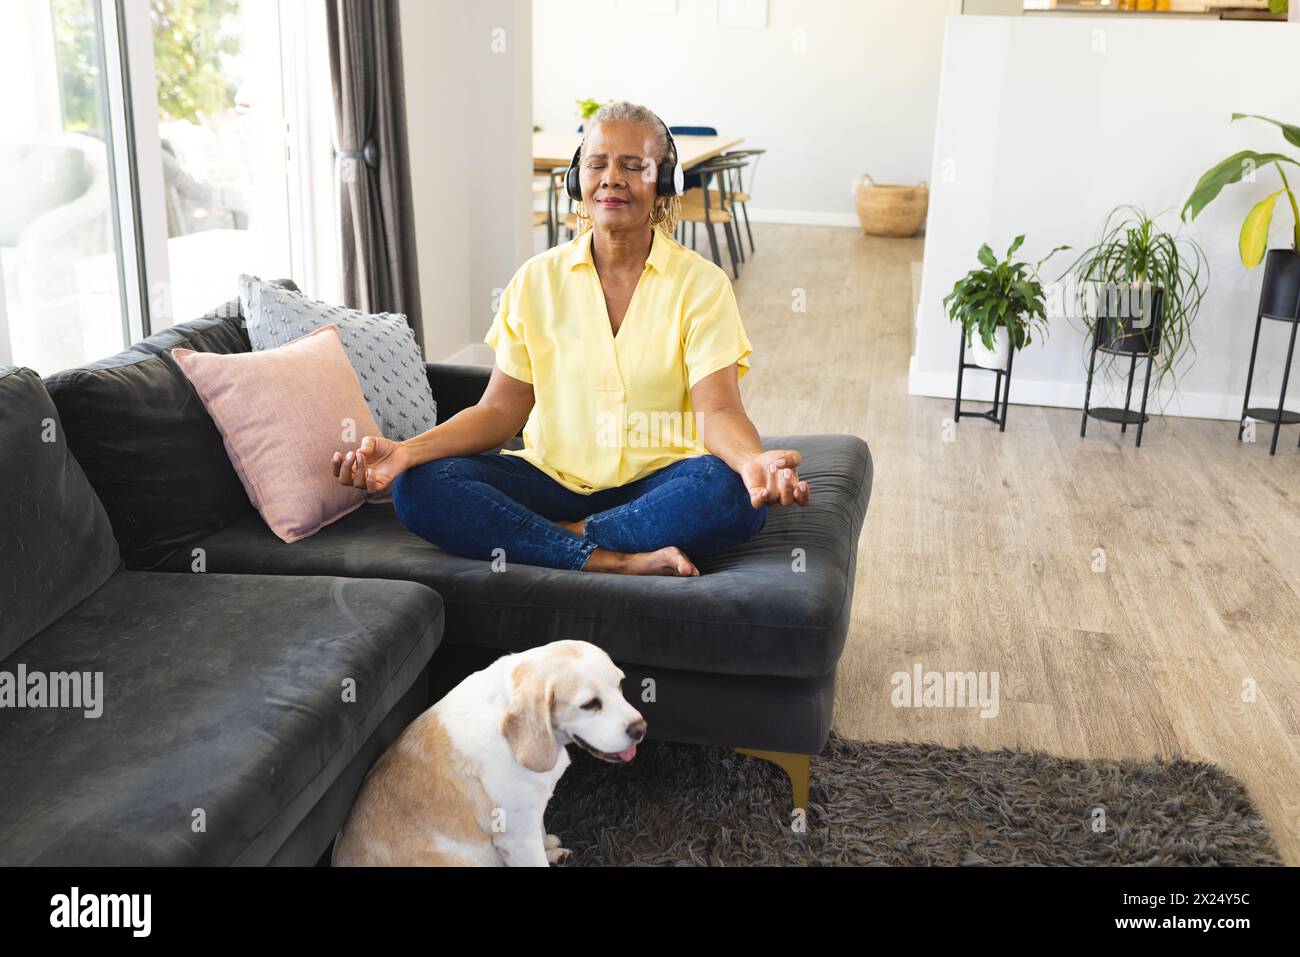 Une femme afro-américaine senior assise les jambes croisées, méditant sur un canapé à la maison. Elle a les cheveux gris courts, portant une chemise jaune et un Jean bleu, wi Banque D'Images